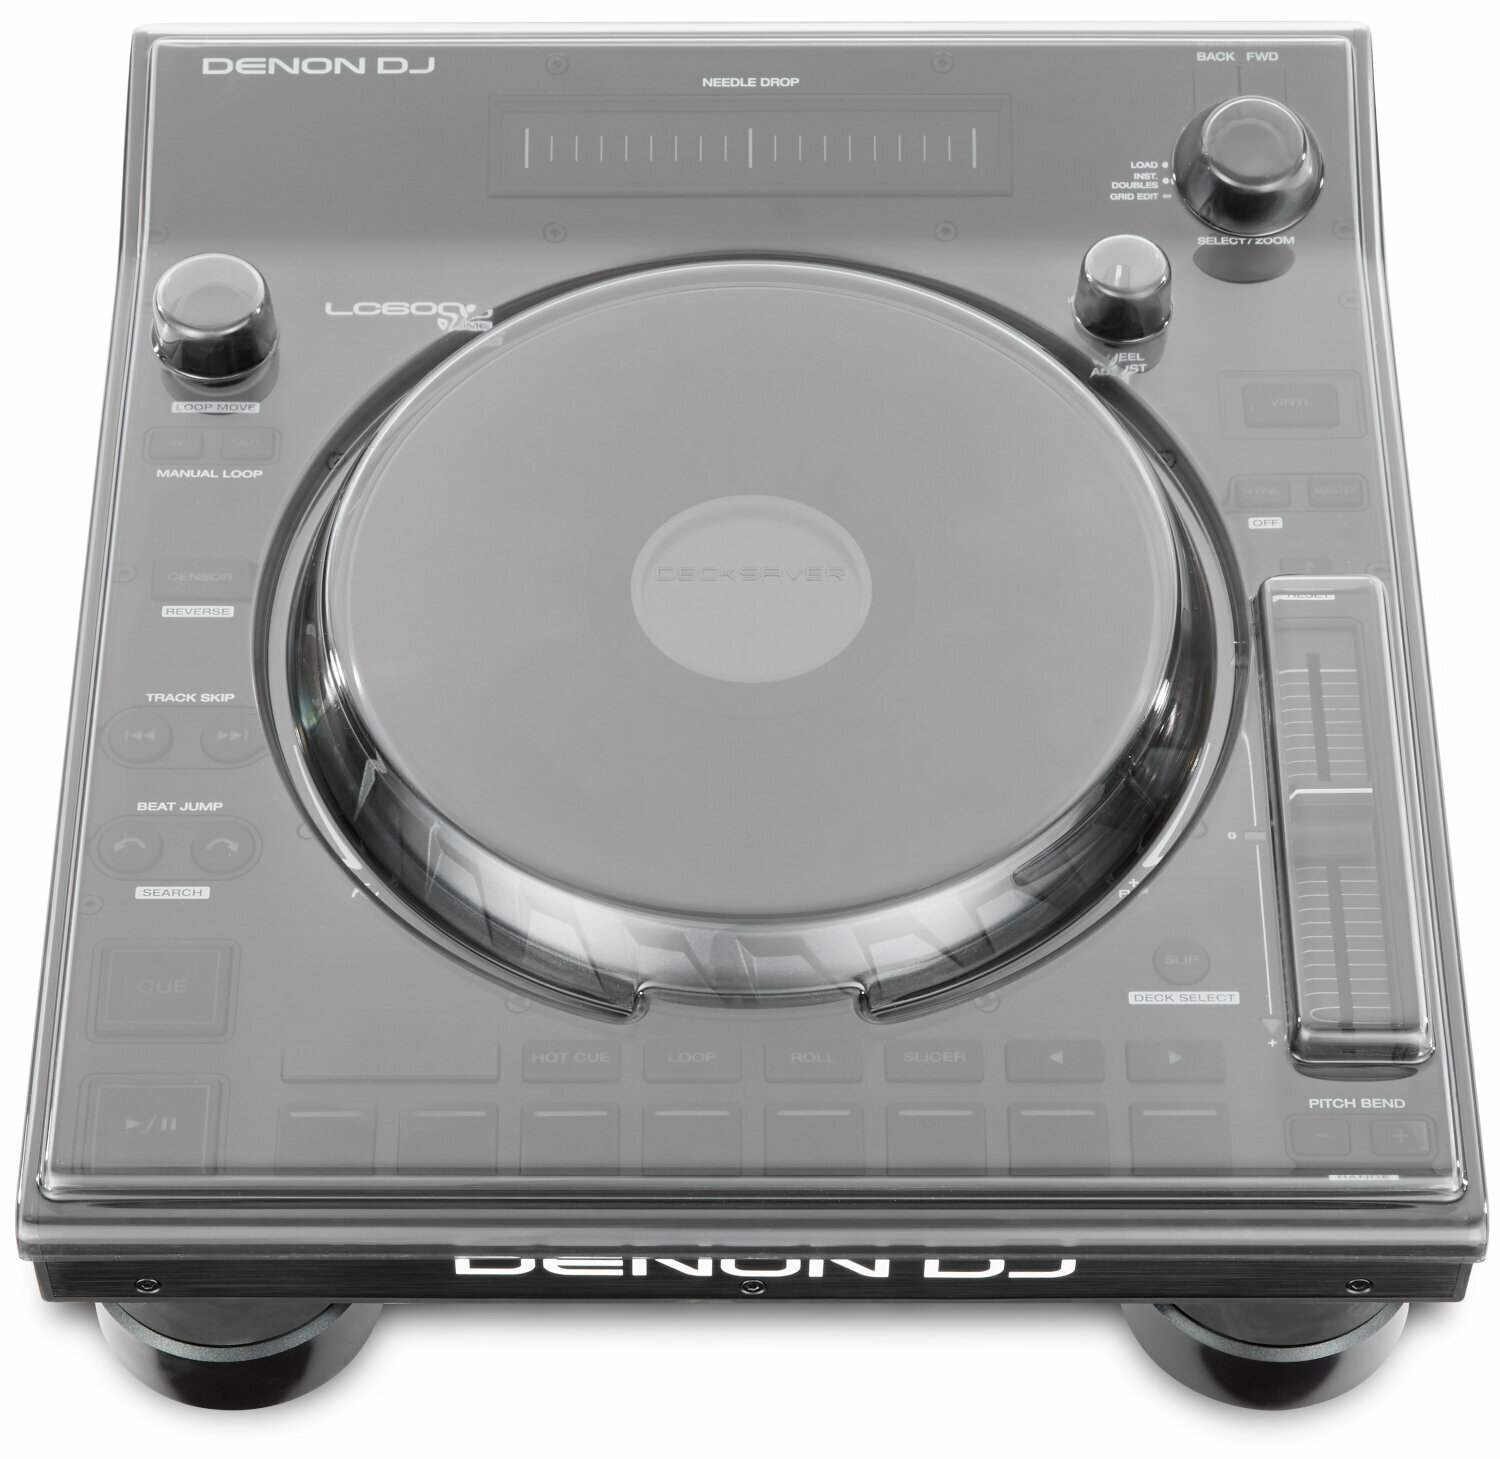 Couvercle de protection pour lecteur DJ
 Decksaver Denon DJ LC6000 Prime